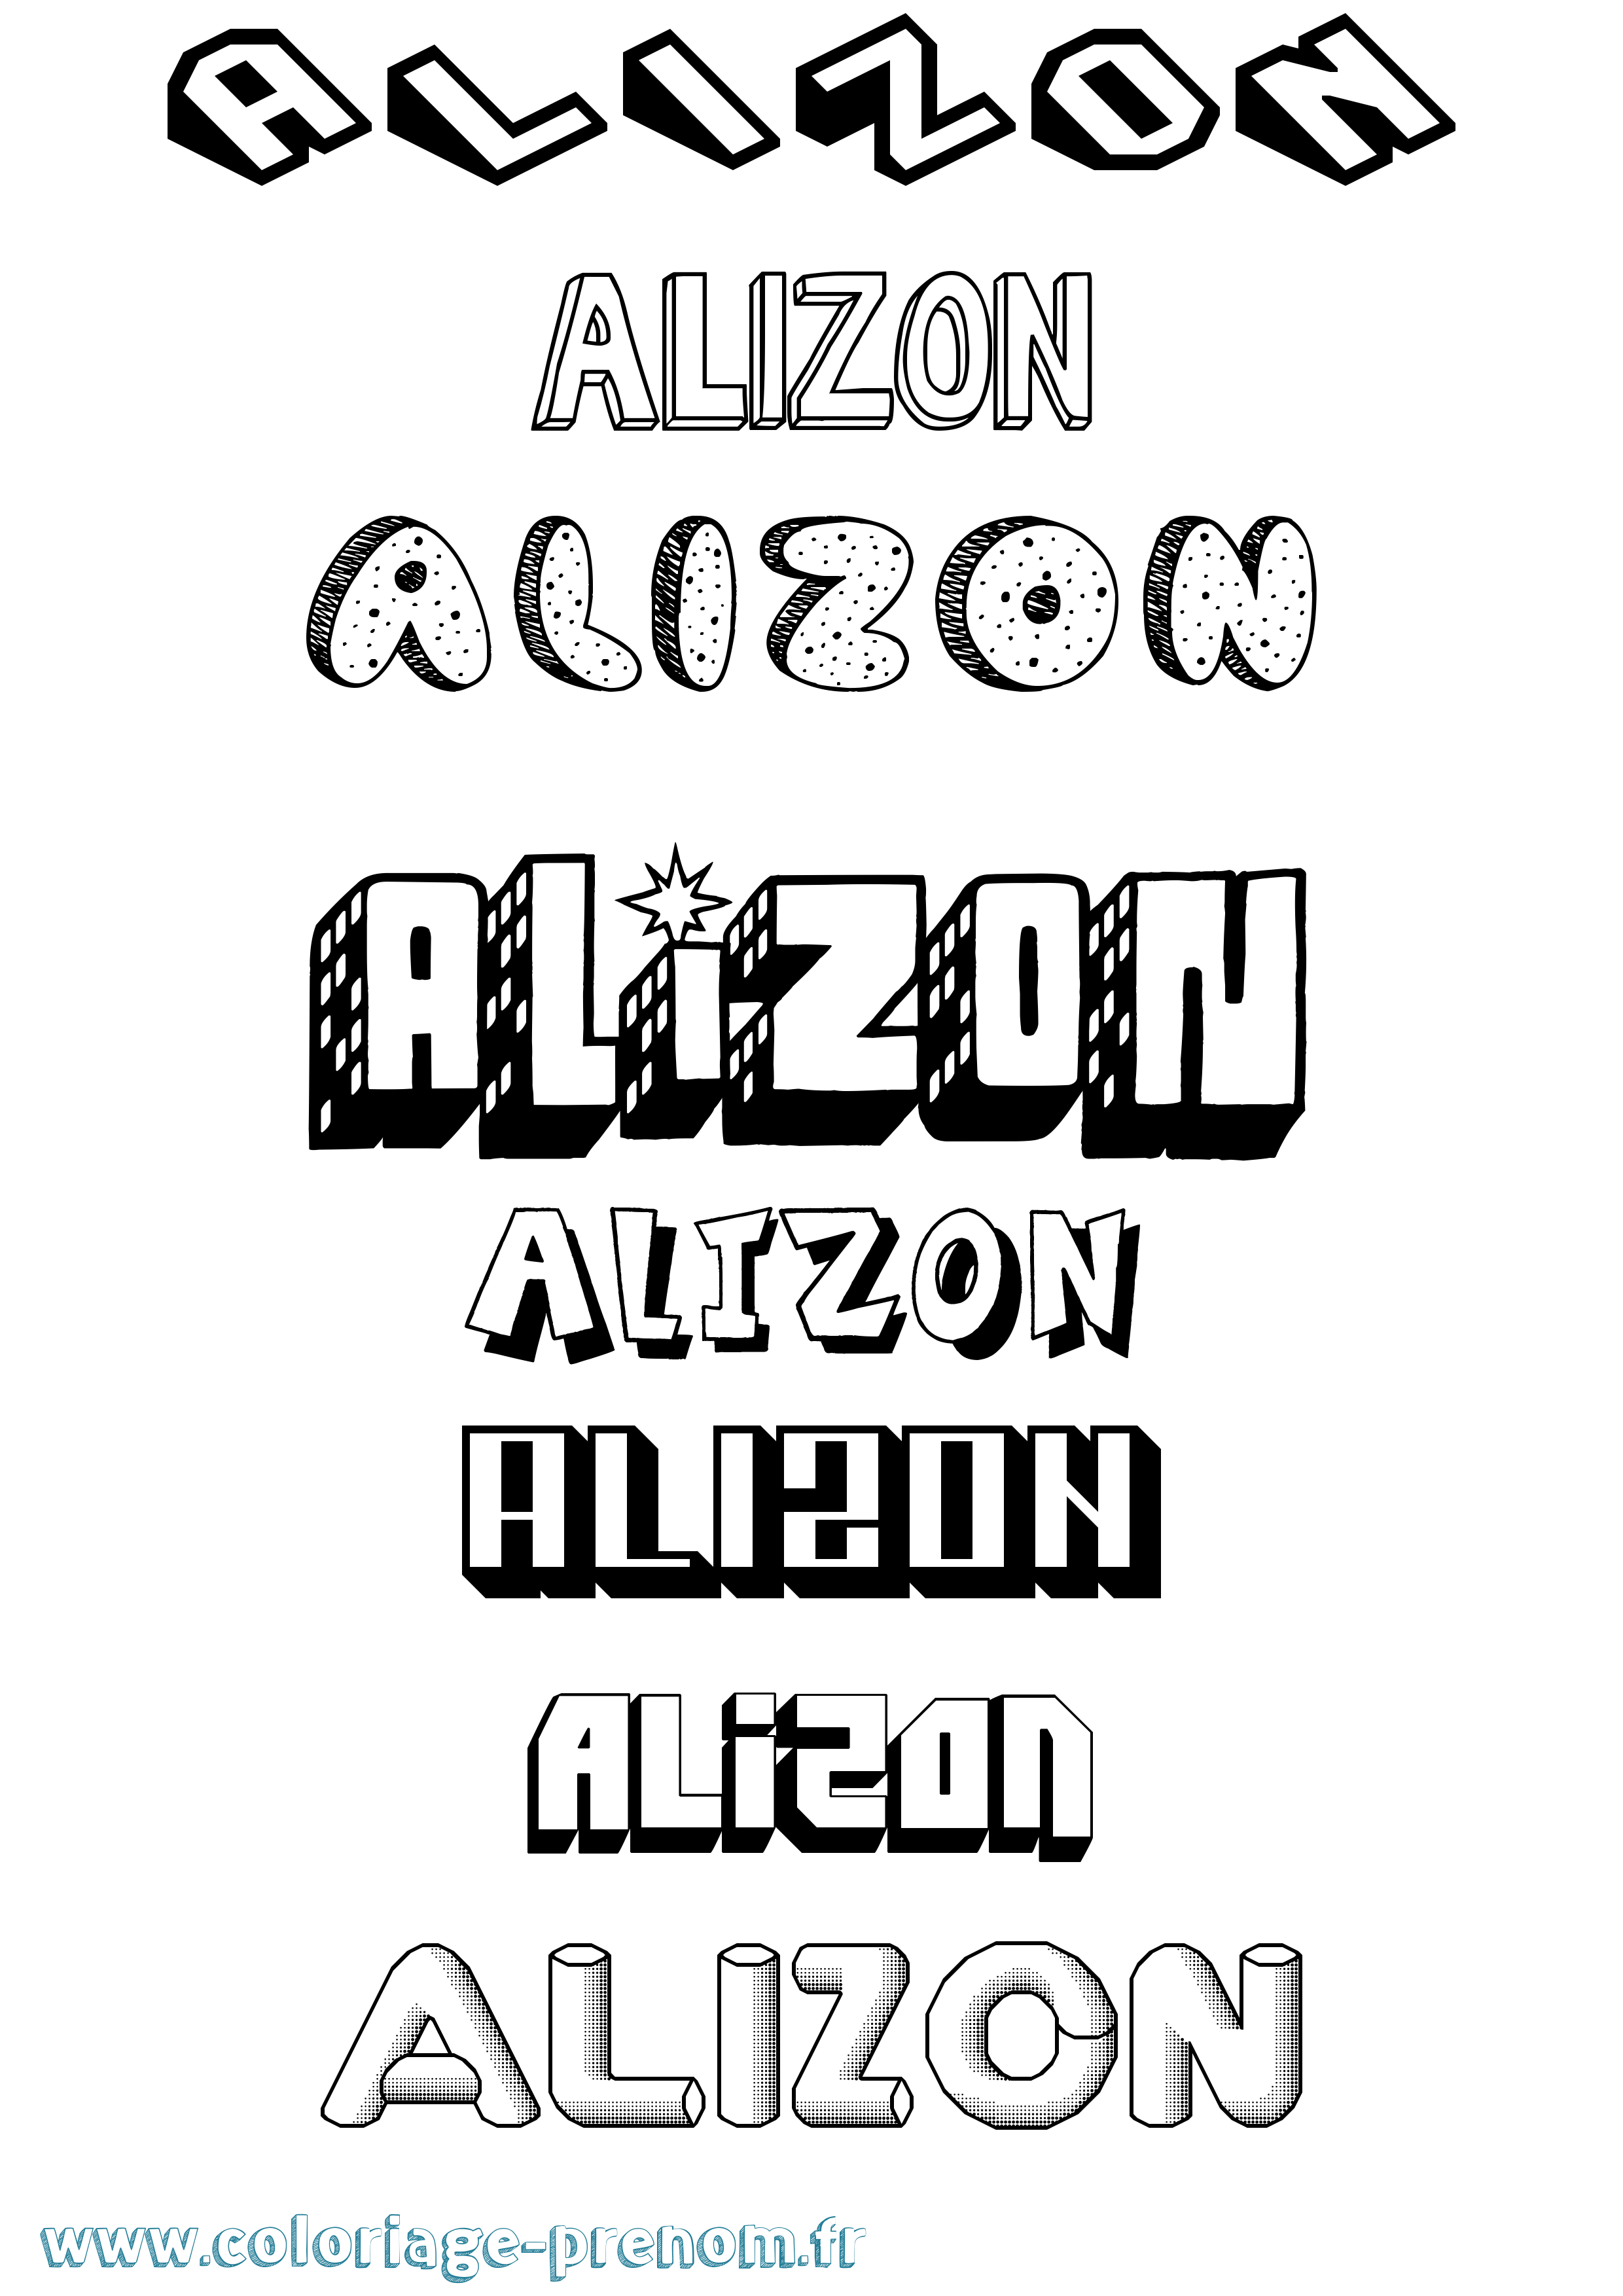 Coloriage prénom Alizon Effet 3D